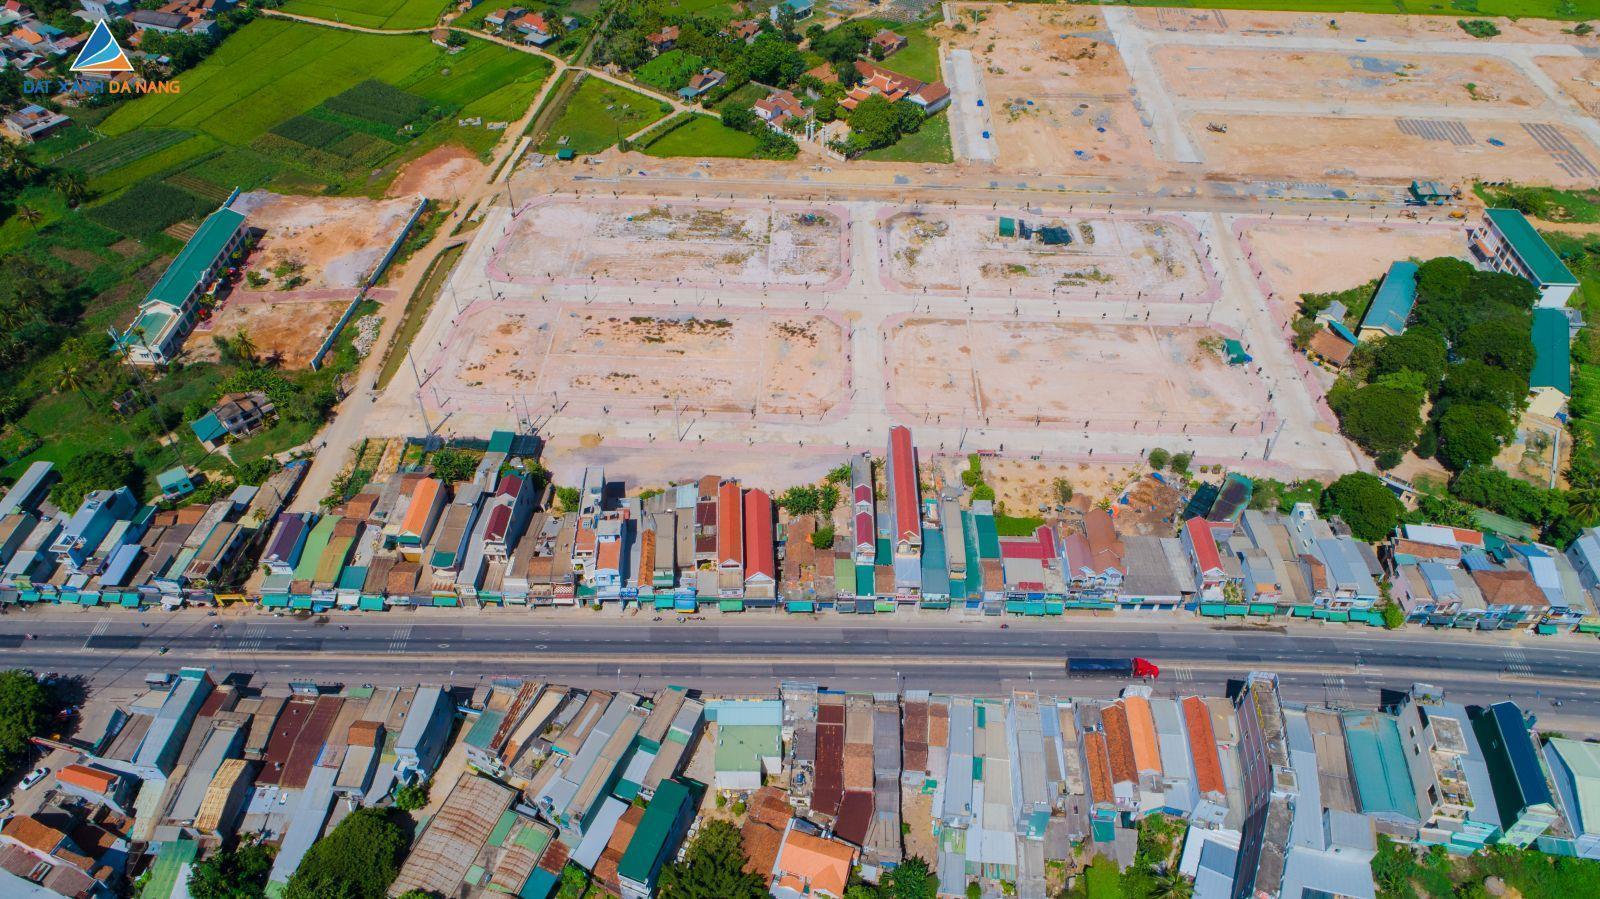 [GÓC CẬP NHẬT] DỰ ÁN PALM VILLAGE THÁNG 08/2019 - Viet Nam Smart City